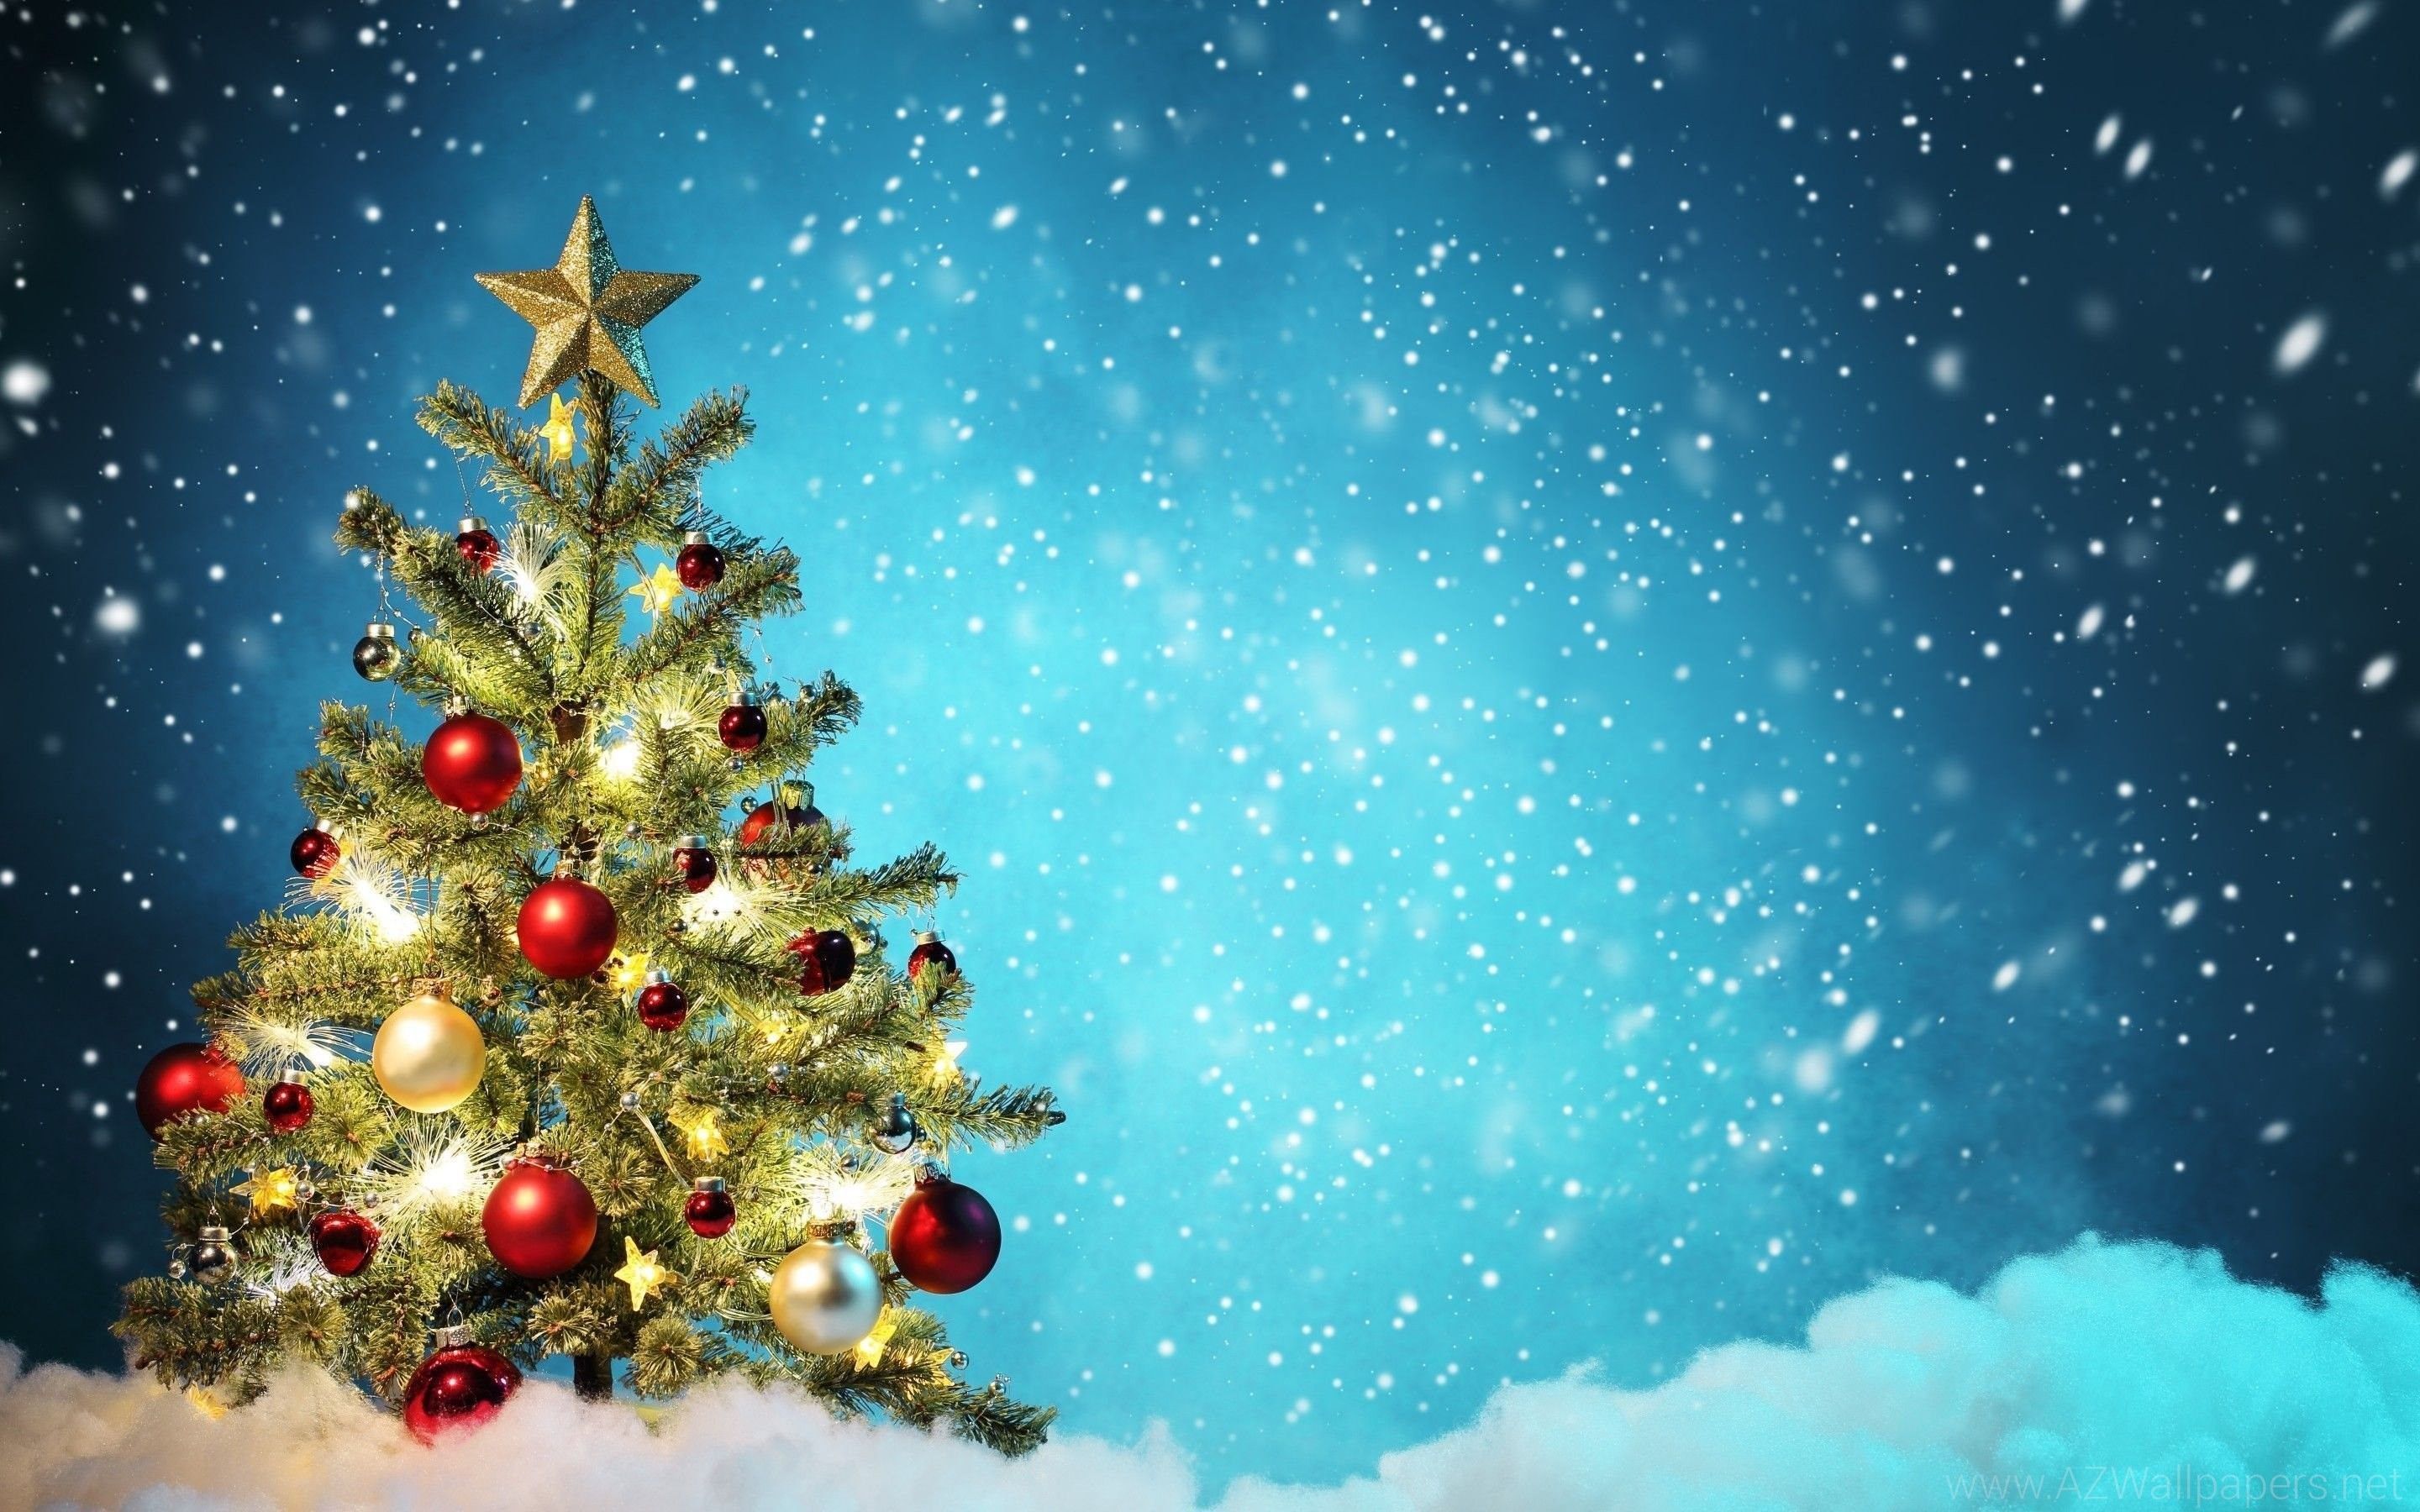 Cập nhật ngay hình nền desktop Giáng Sinh đẹp miễn phí dành cho bạn tín đồ Kitô giáo. Không chỉ sắc nét mà còn rất trang trọng, đẹp mắt và phù hợp với các thiết bị hiện đại. Hãy cùng tải ngay và chuẩn bị cho một mùa Giáng Sinh đong đầy cảm xúc nhé! 